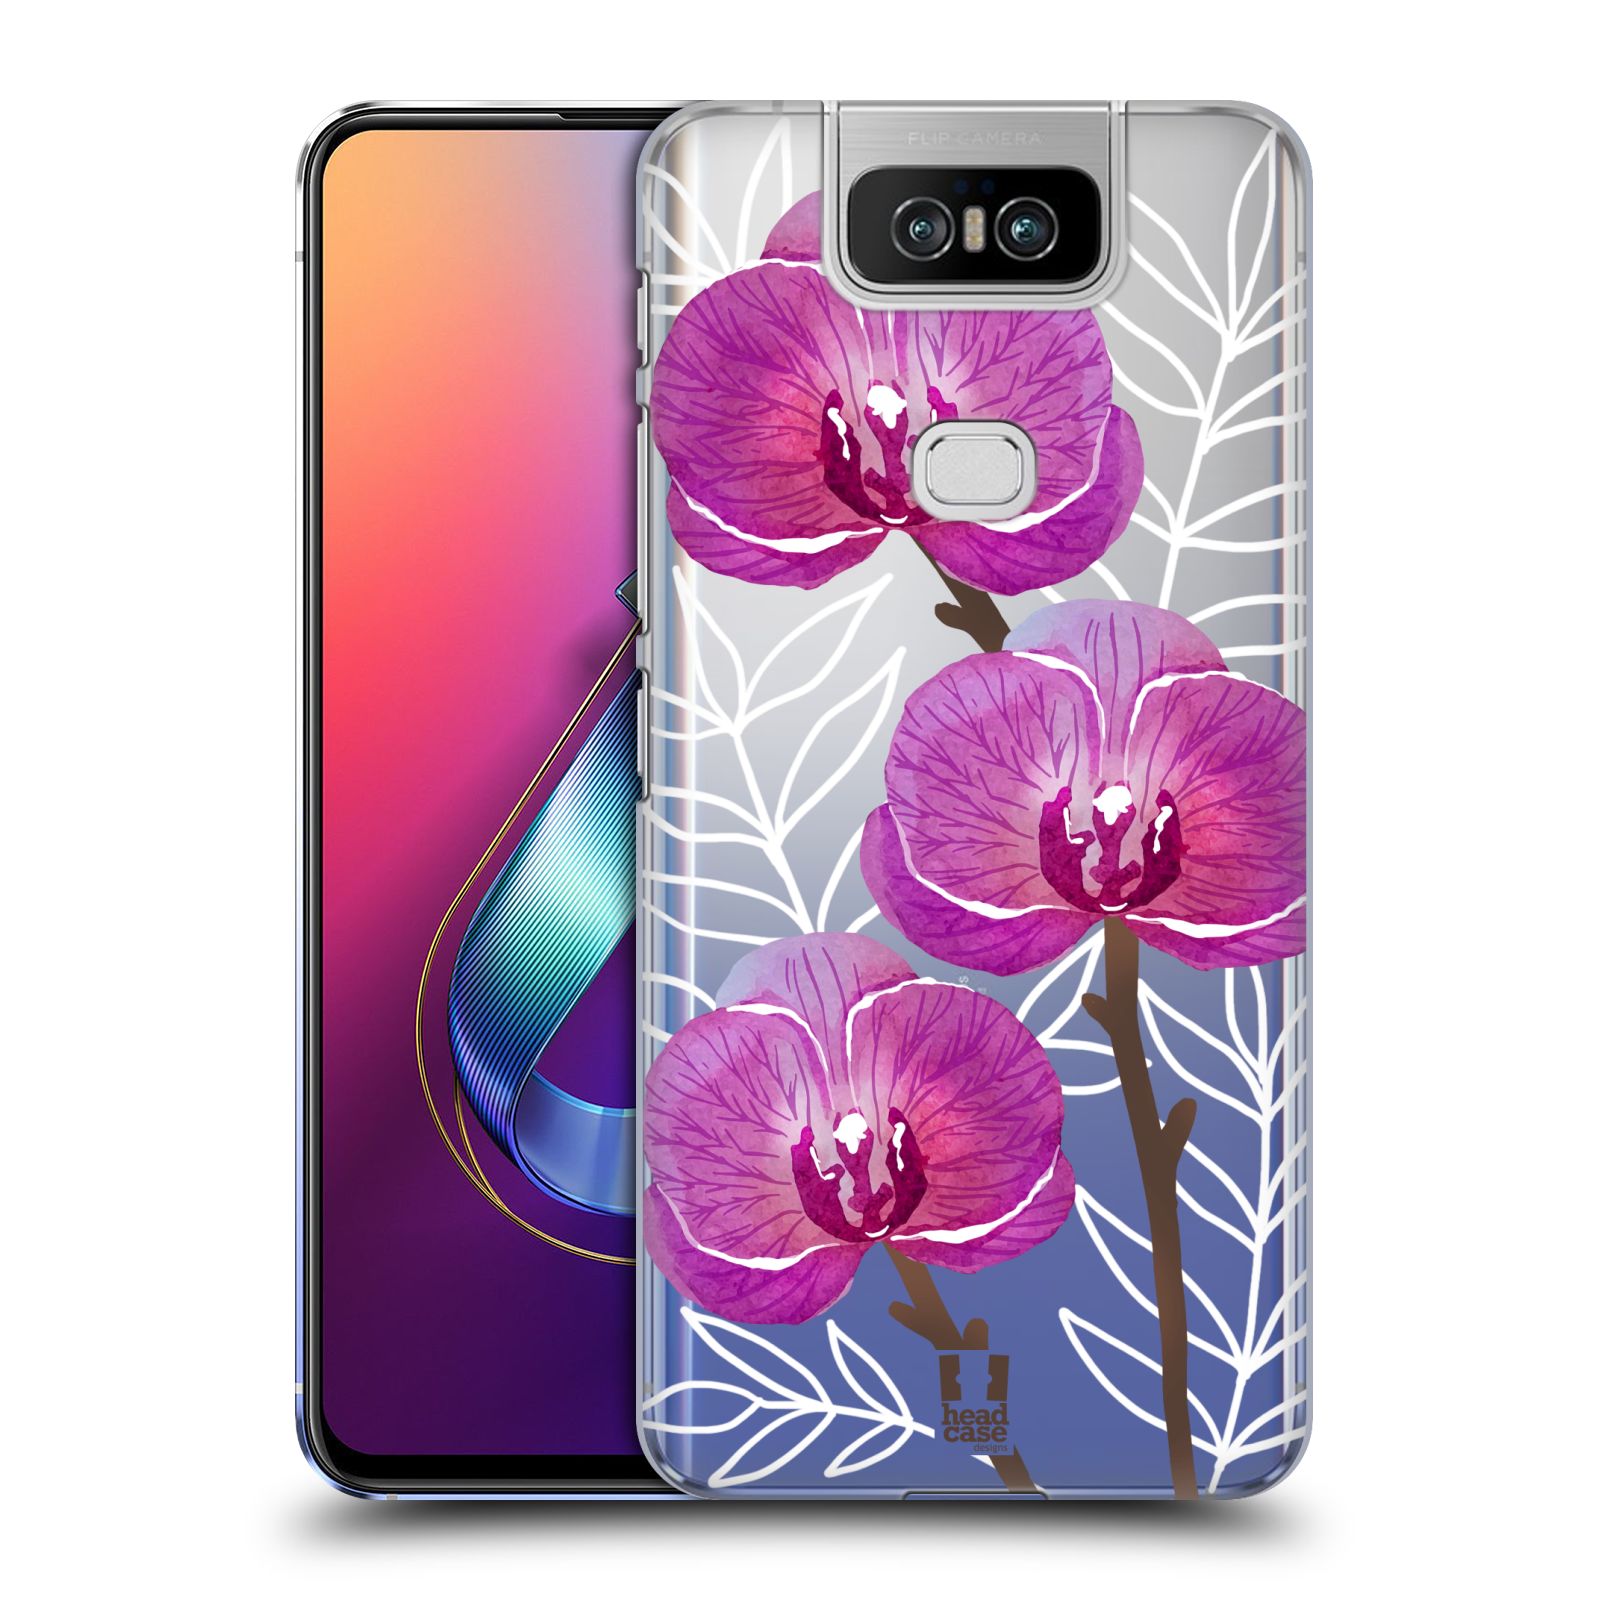 Pouzdro na mobil Asus Zenfone 6 ZS630KL - HEAD CASE - Orchideje fialová